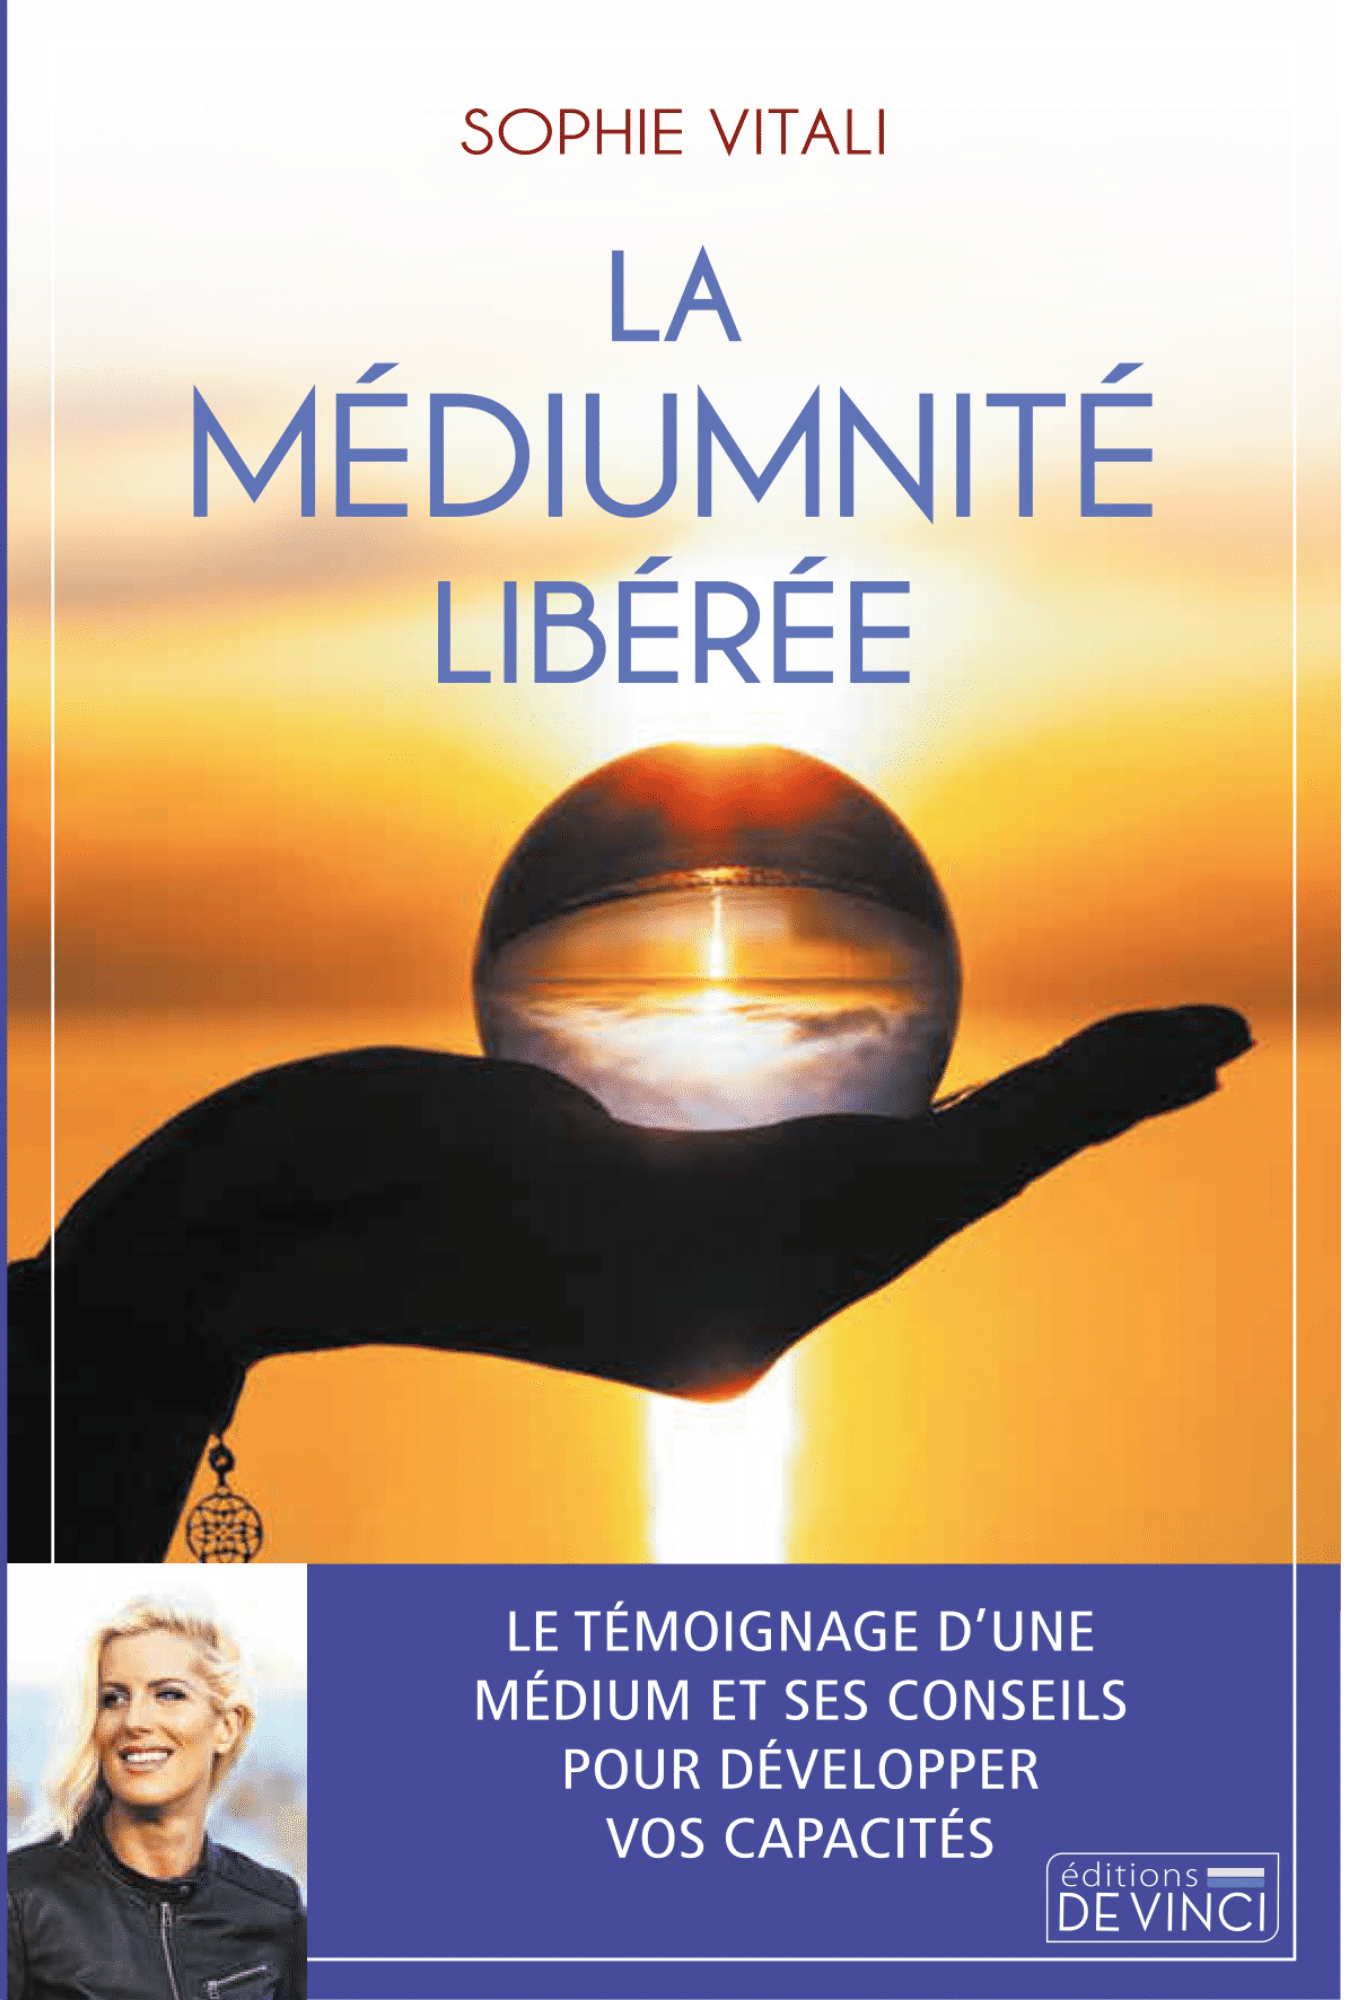 La médiumnité libérée, le livre de la célèbre médium Sophie Vitali : guérison émotionnelle, amour, arts divinatoires, liens karmiques